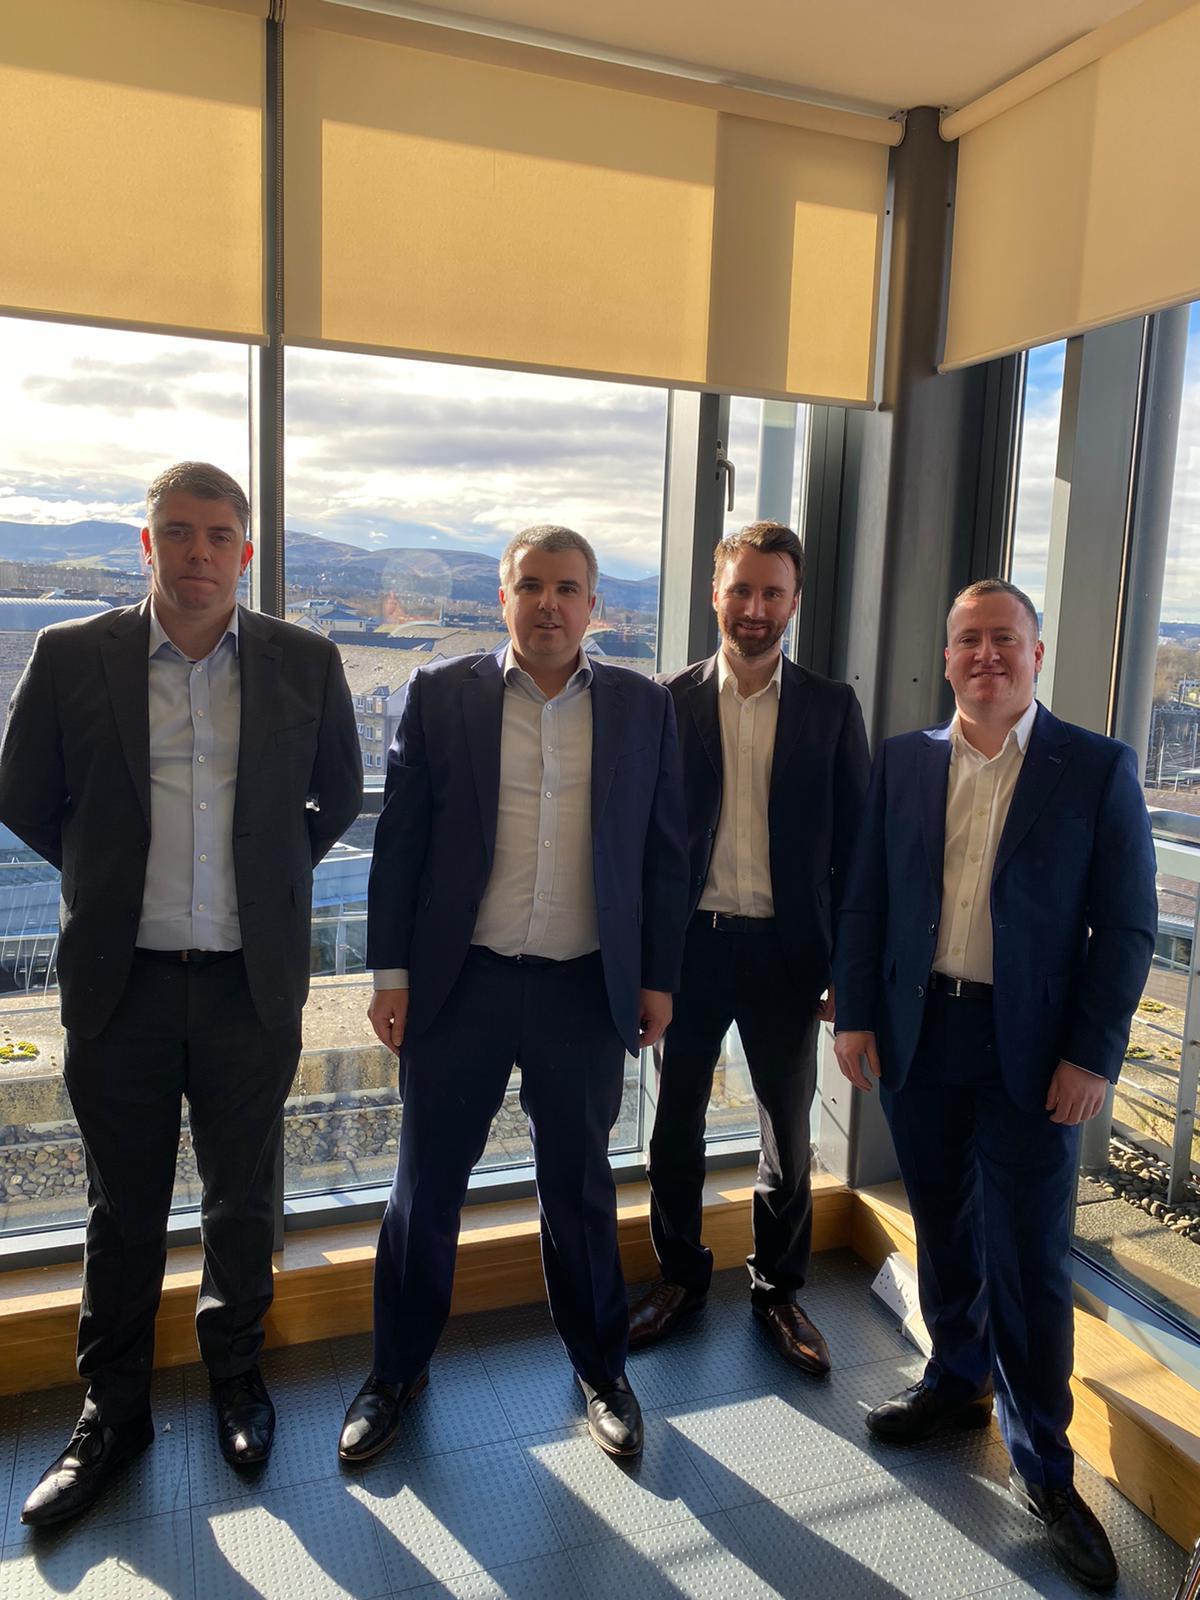 BDO Scotland expands tax team with trio of hires